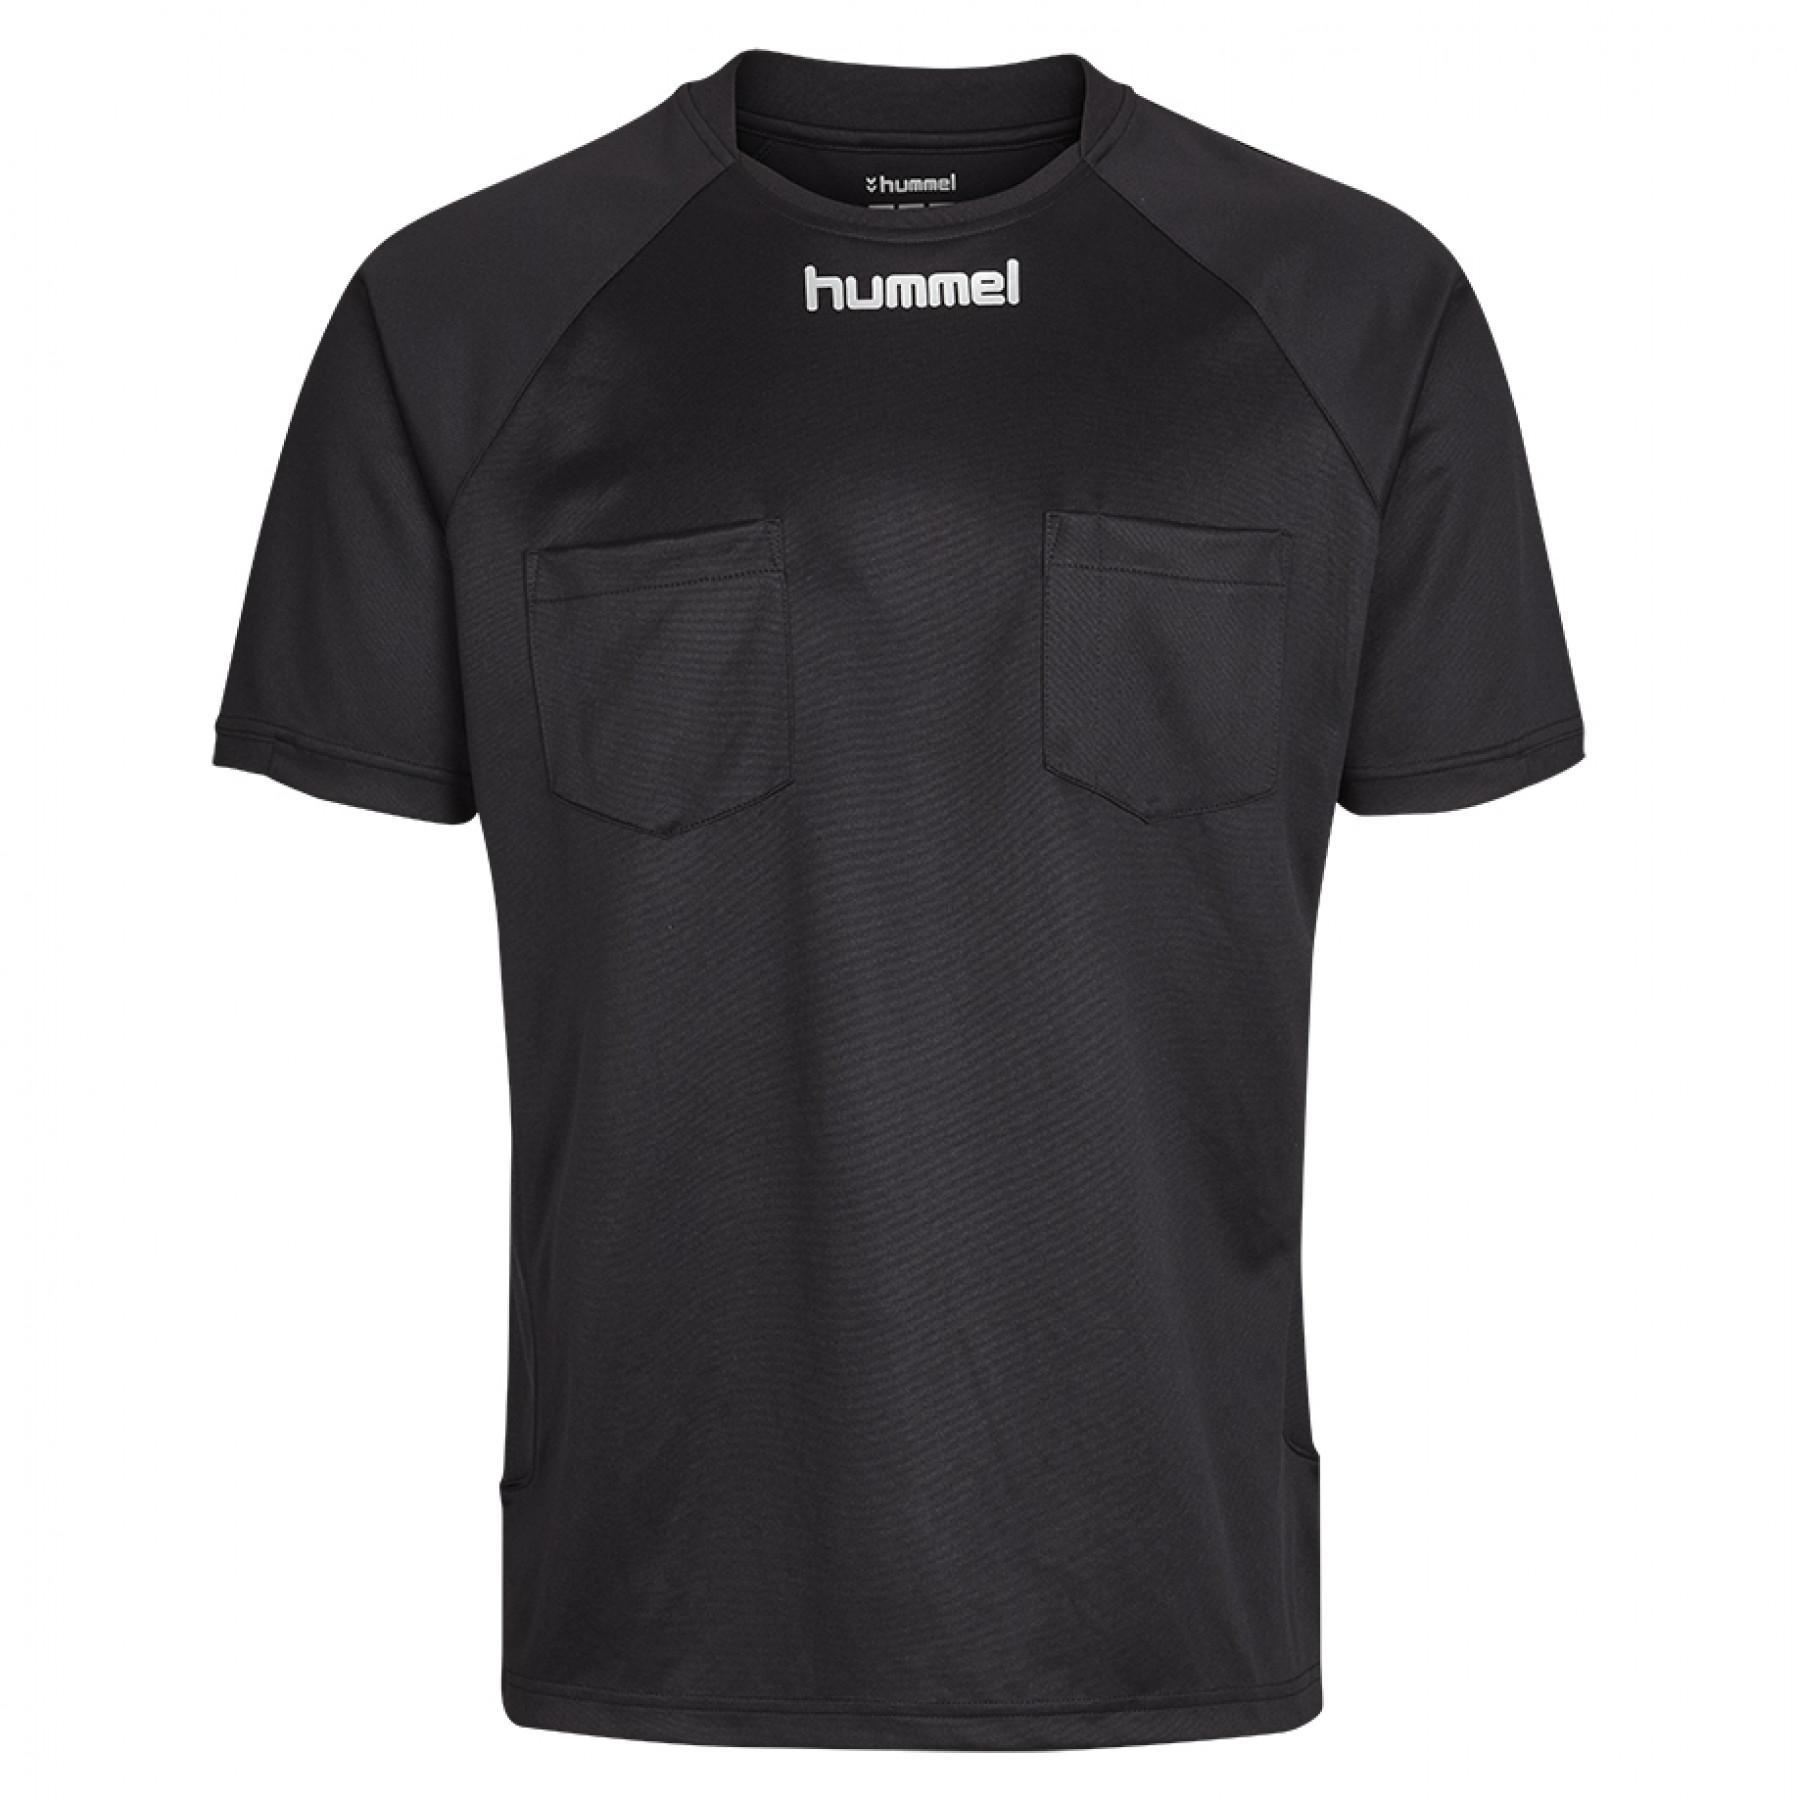 Kampfrichterhemd Hummel classic